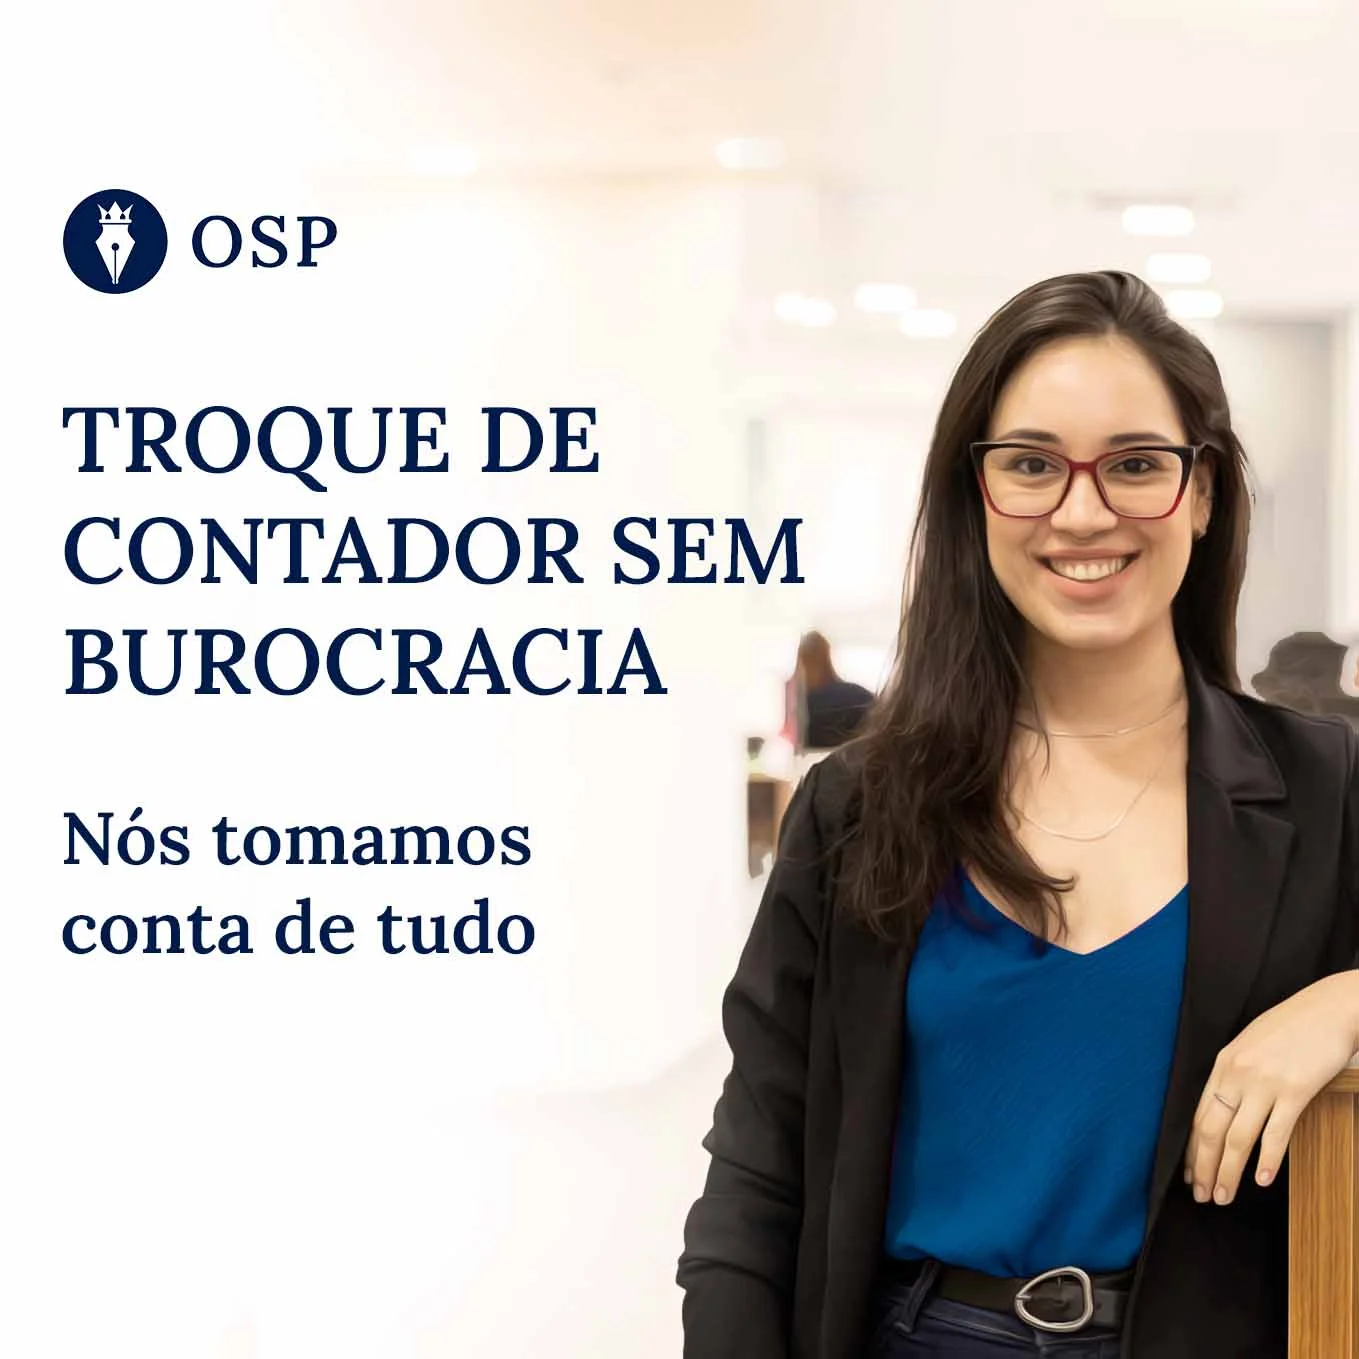 Uma contadora sorridente, simbolizando o serviço acessível e sem burocracia oferecido pela OSP para a troca de contador.